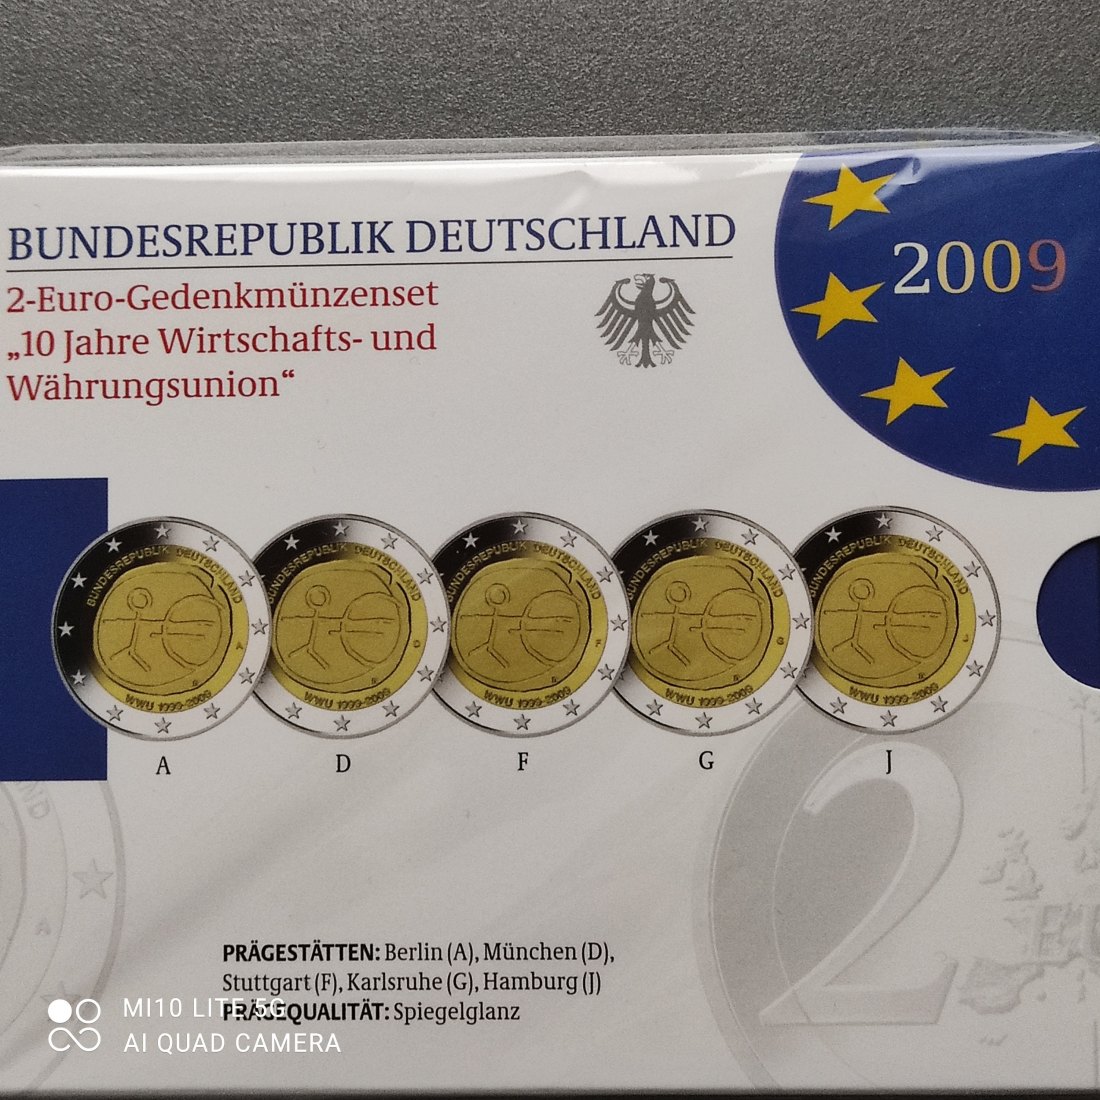  BRD Deutschland 2 Euro Gedenkmünzen Set 2009 ADFGJ proof pp spiegelglanz 10 Jahre WWU   